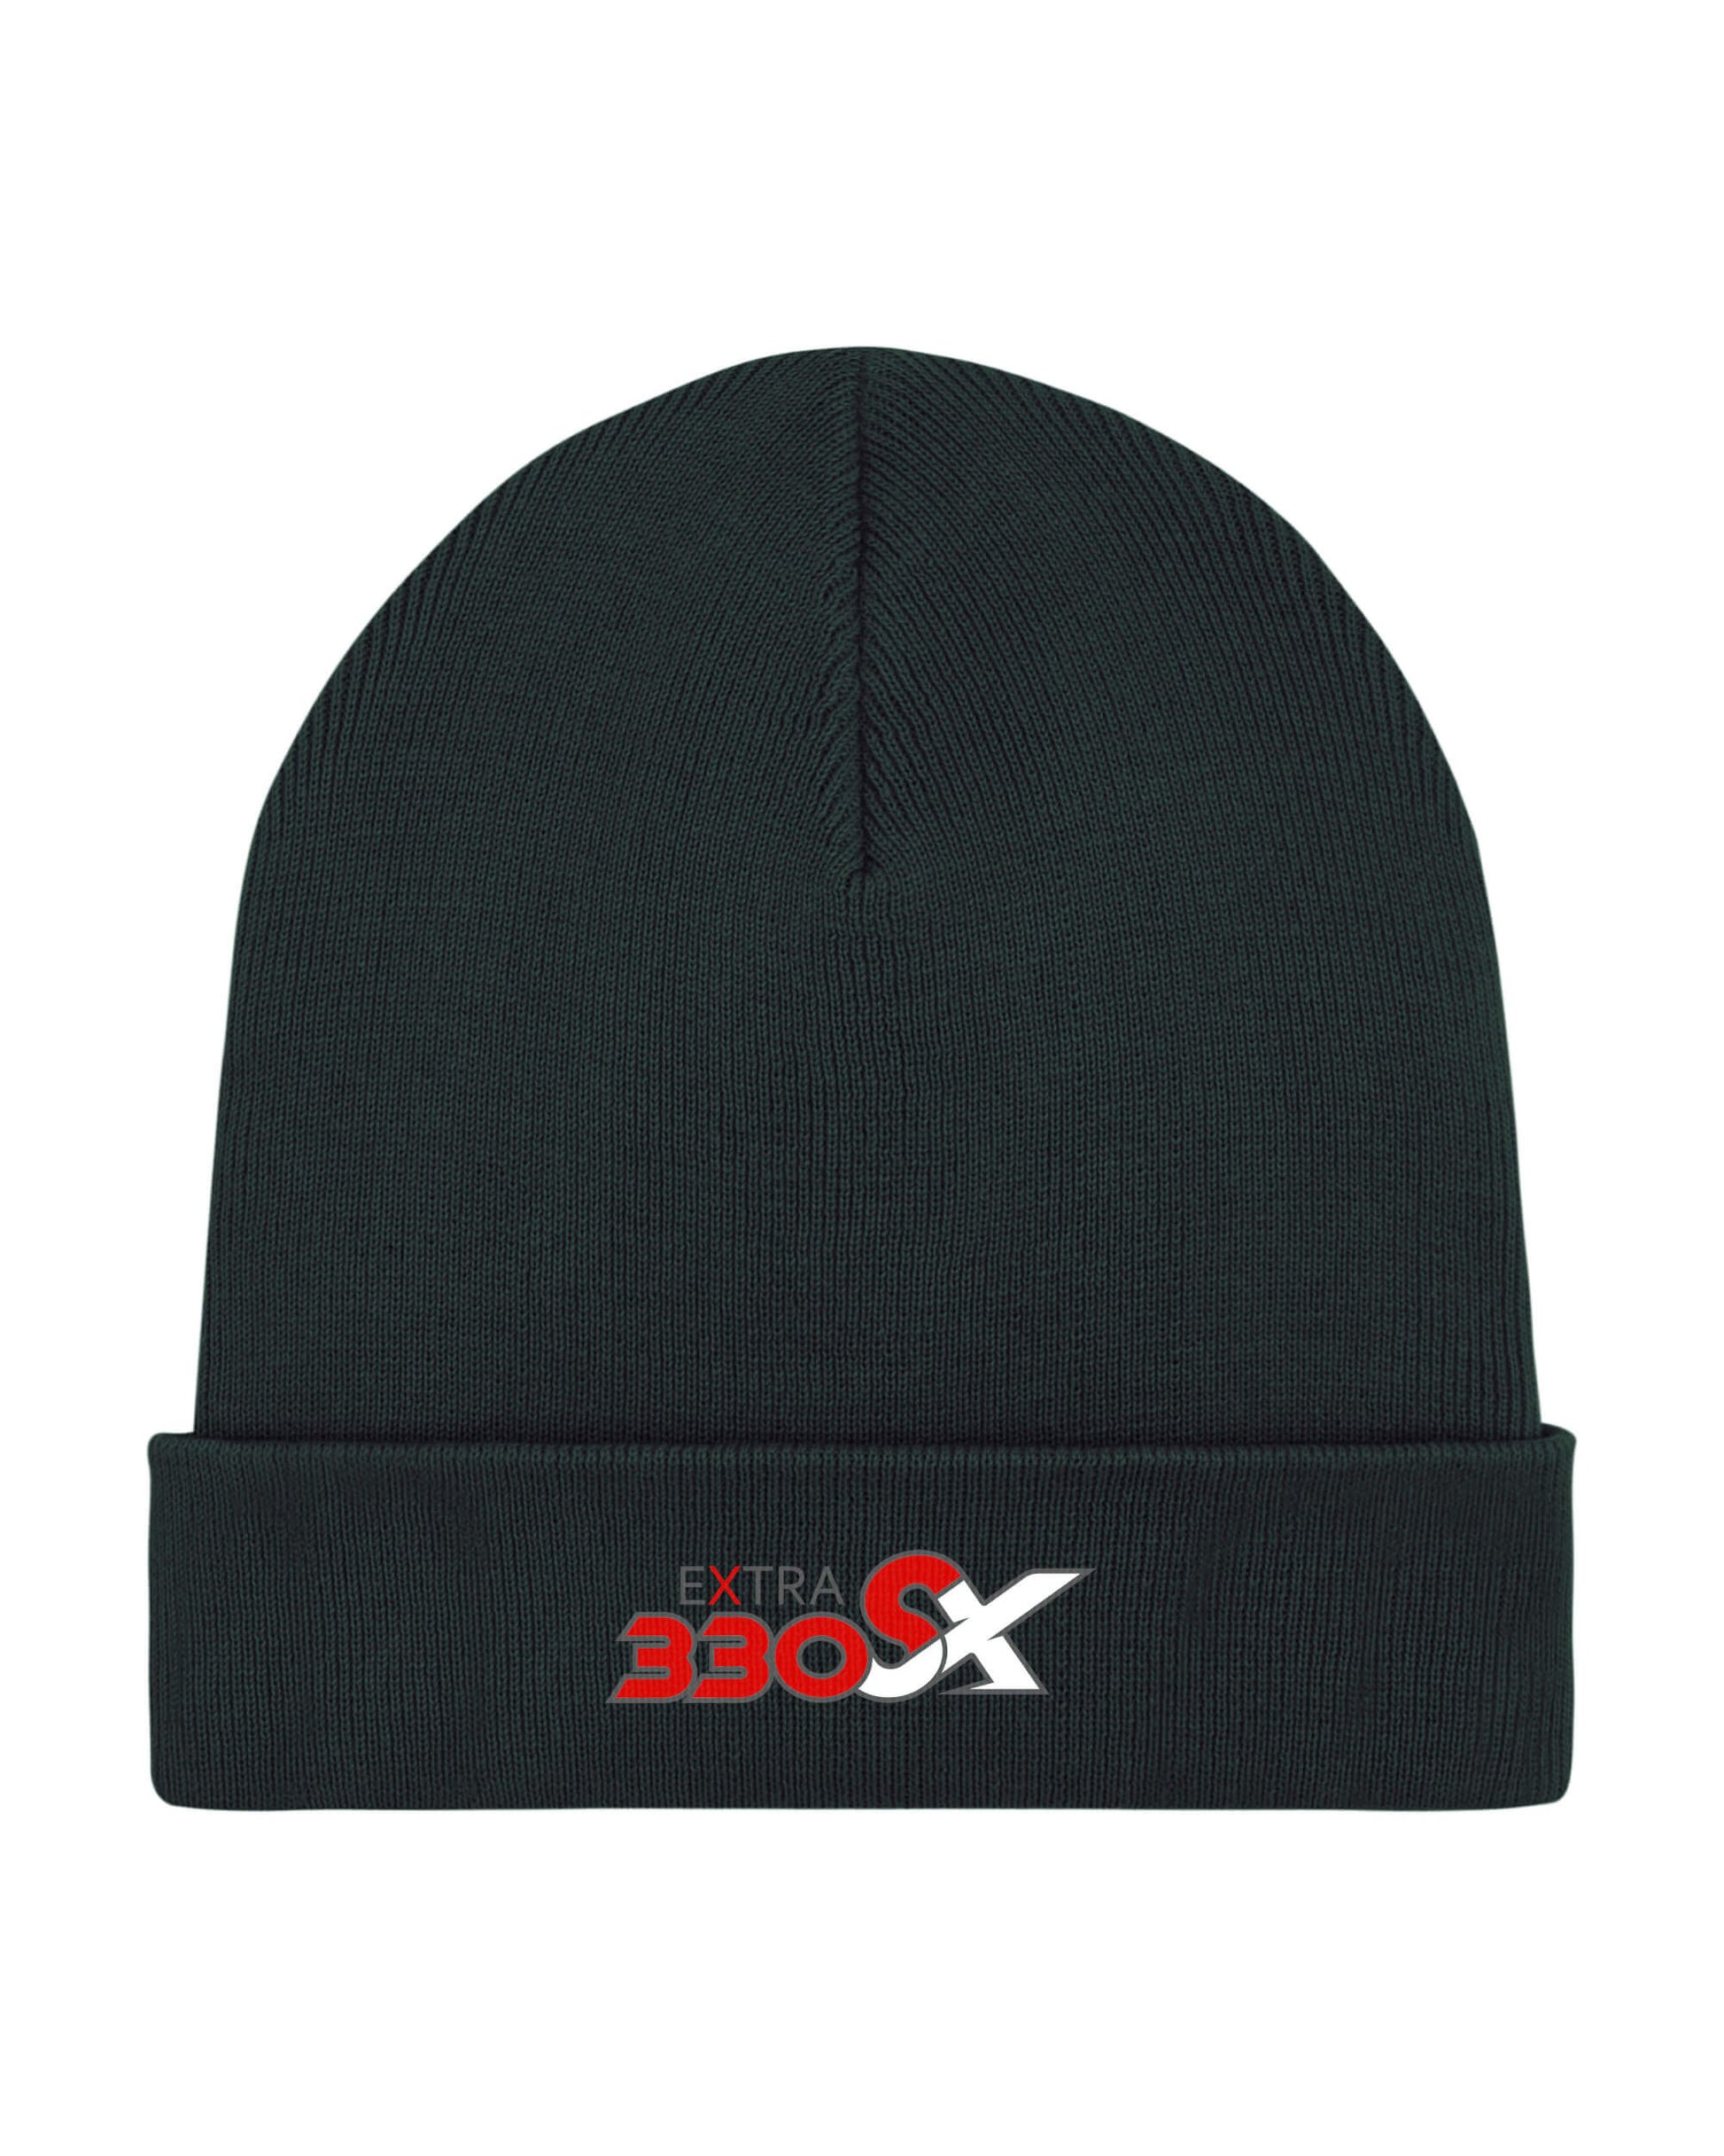 Produktbild der schwarzen Strick-Mütze vor weißem Hintergrund. Dargestellt wird das Extra 330 SX Typ-Logo